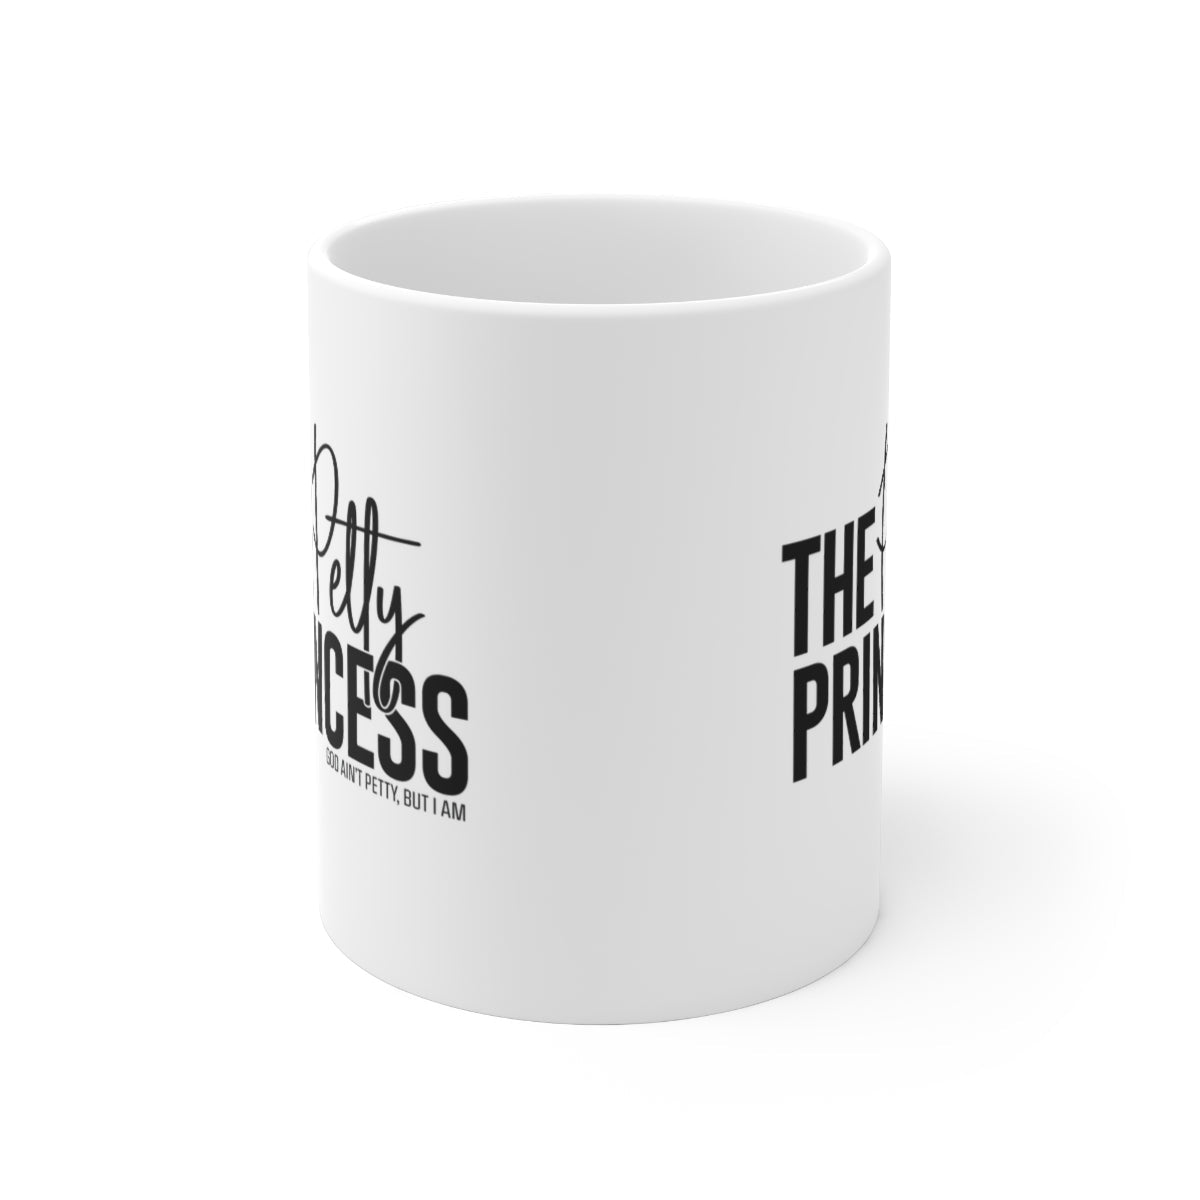 The Petty Princess Mug 11oz (White/Black)-Mug-The Original God Ain't Petty But I Am